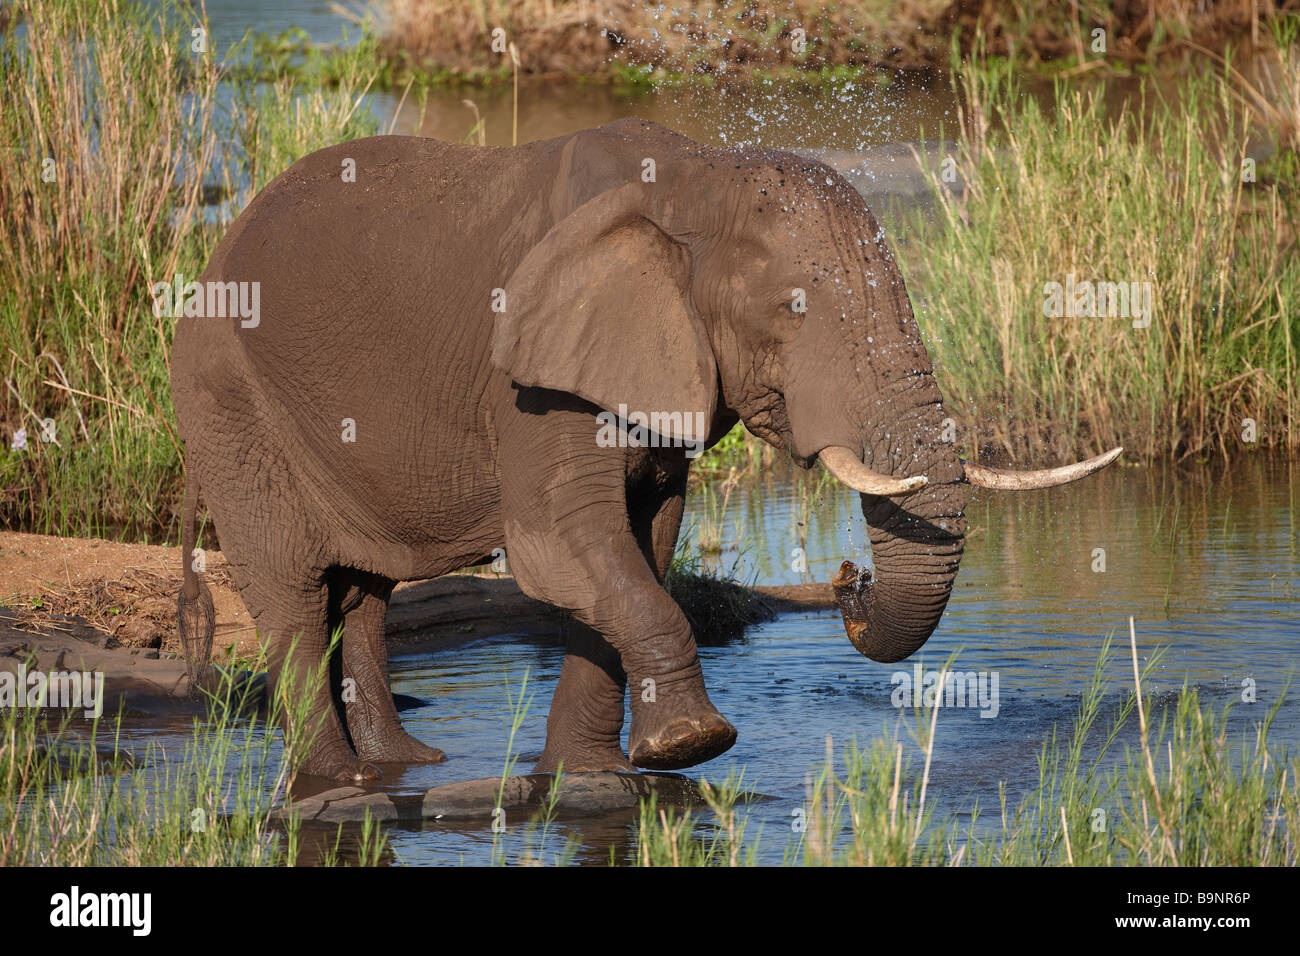 Elefante africano tomando un baño en el río, el Parque Nacional Kruger, Sudáfrica Foto de stock